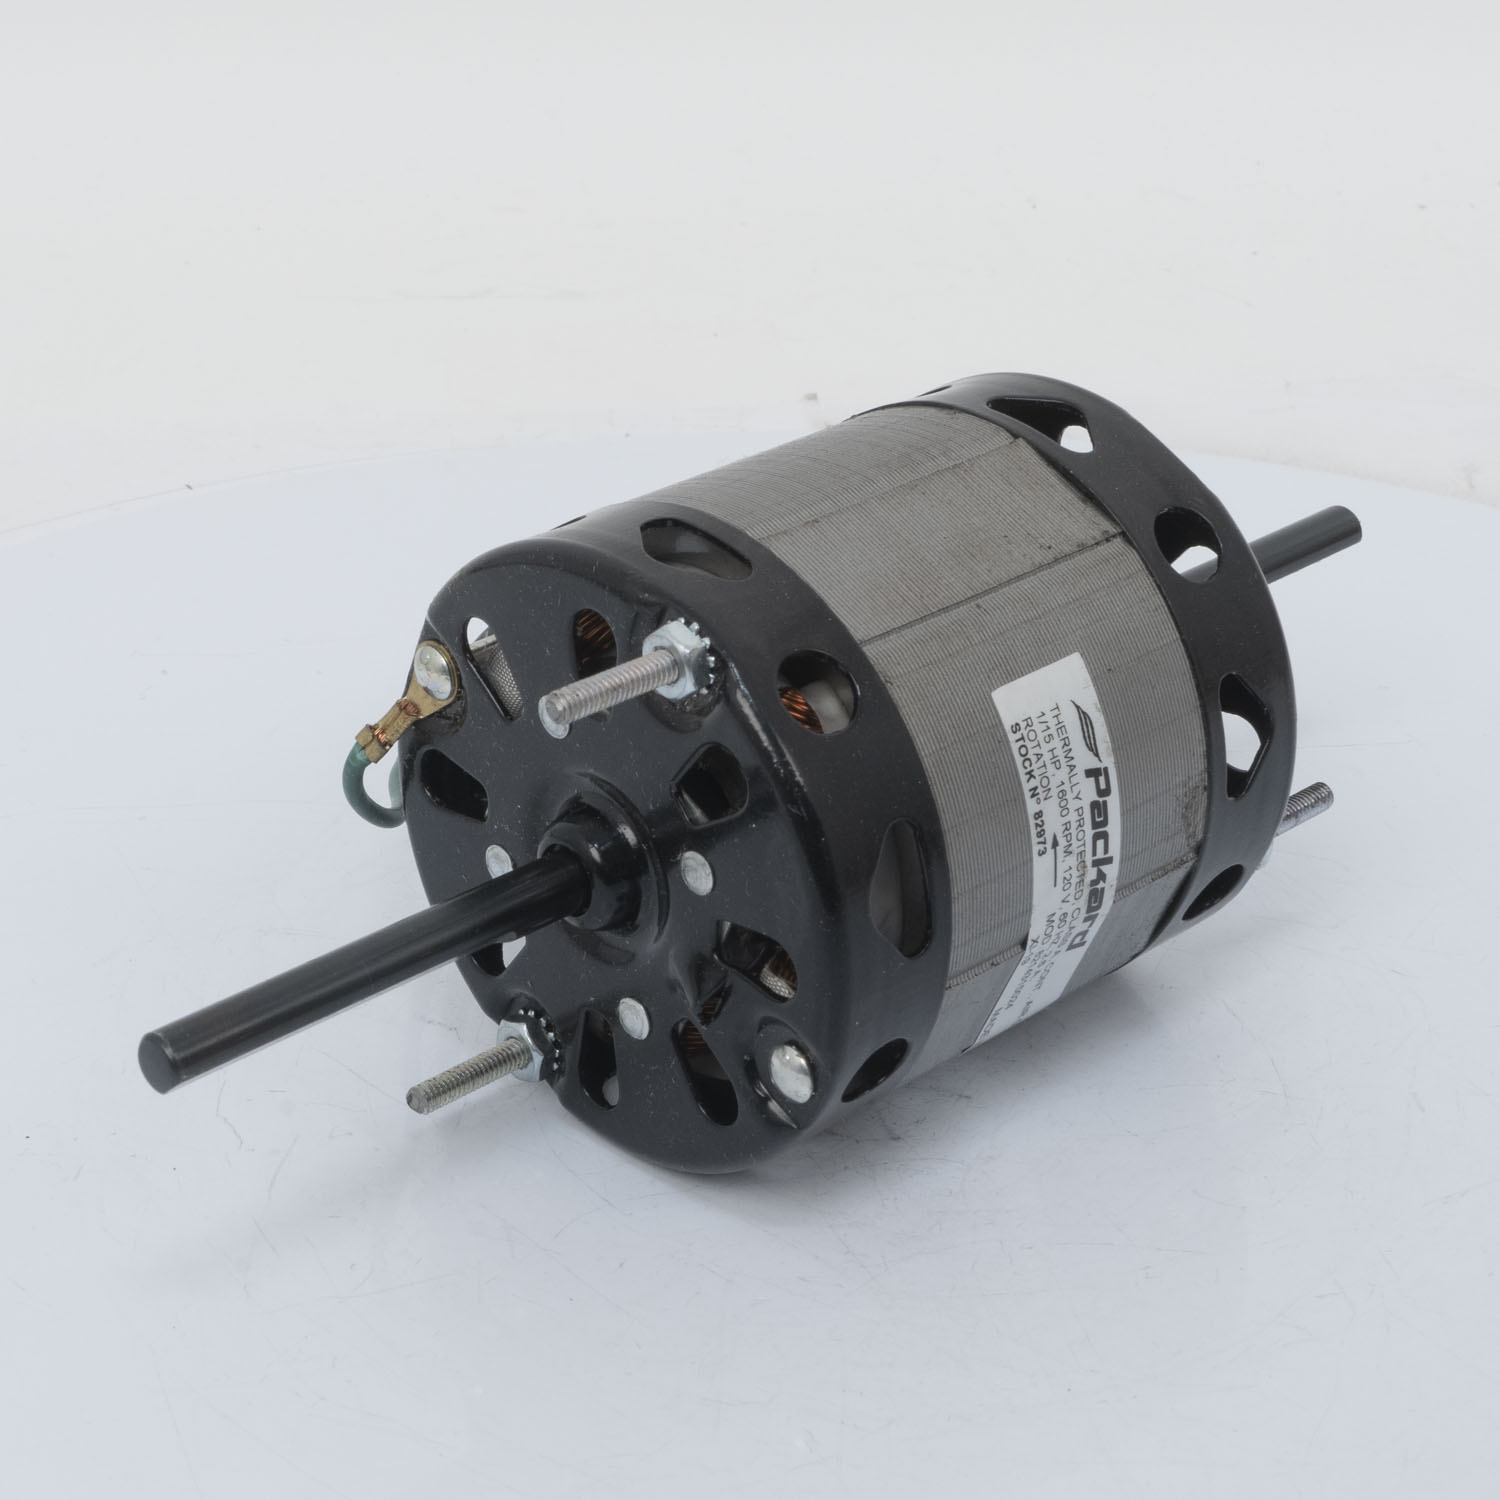 3.3" Diameter Motor, 1/15 HP, 120 Volt, 1600 RPM, Broan Replacement